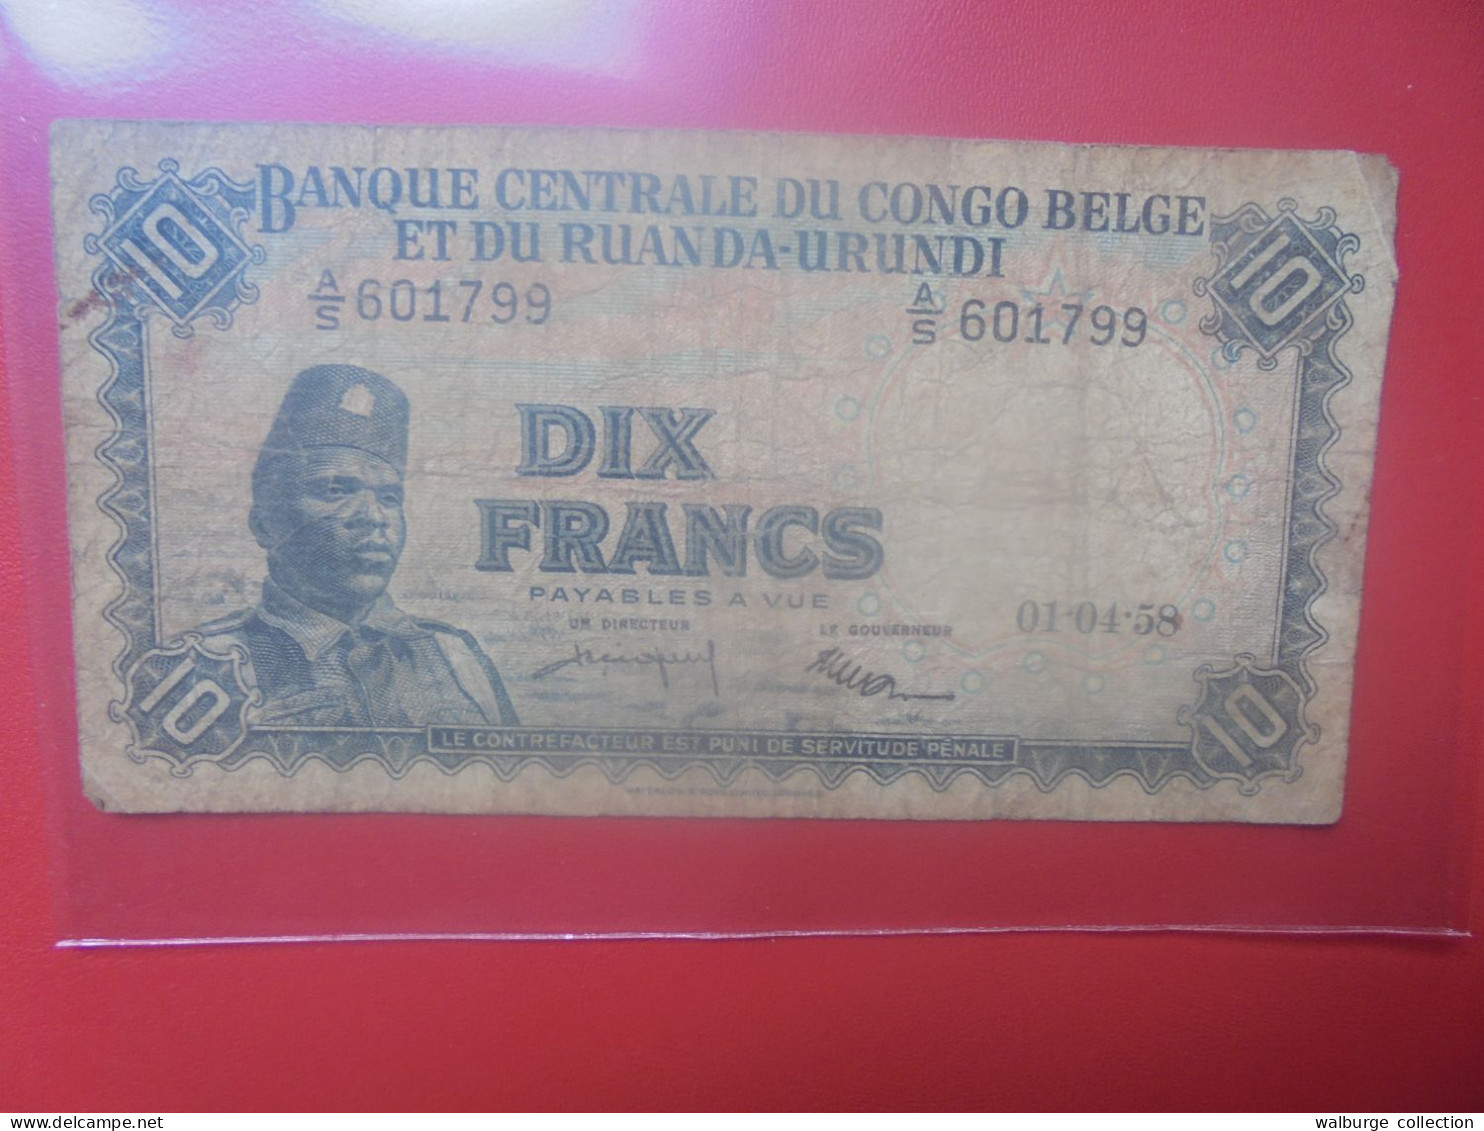 CONGO BELGE 10 FRANCS 1-4-58 Circuler (B.33) - Banca Del Congo Belga